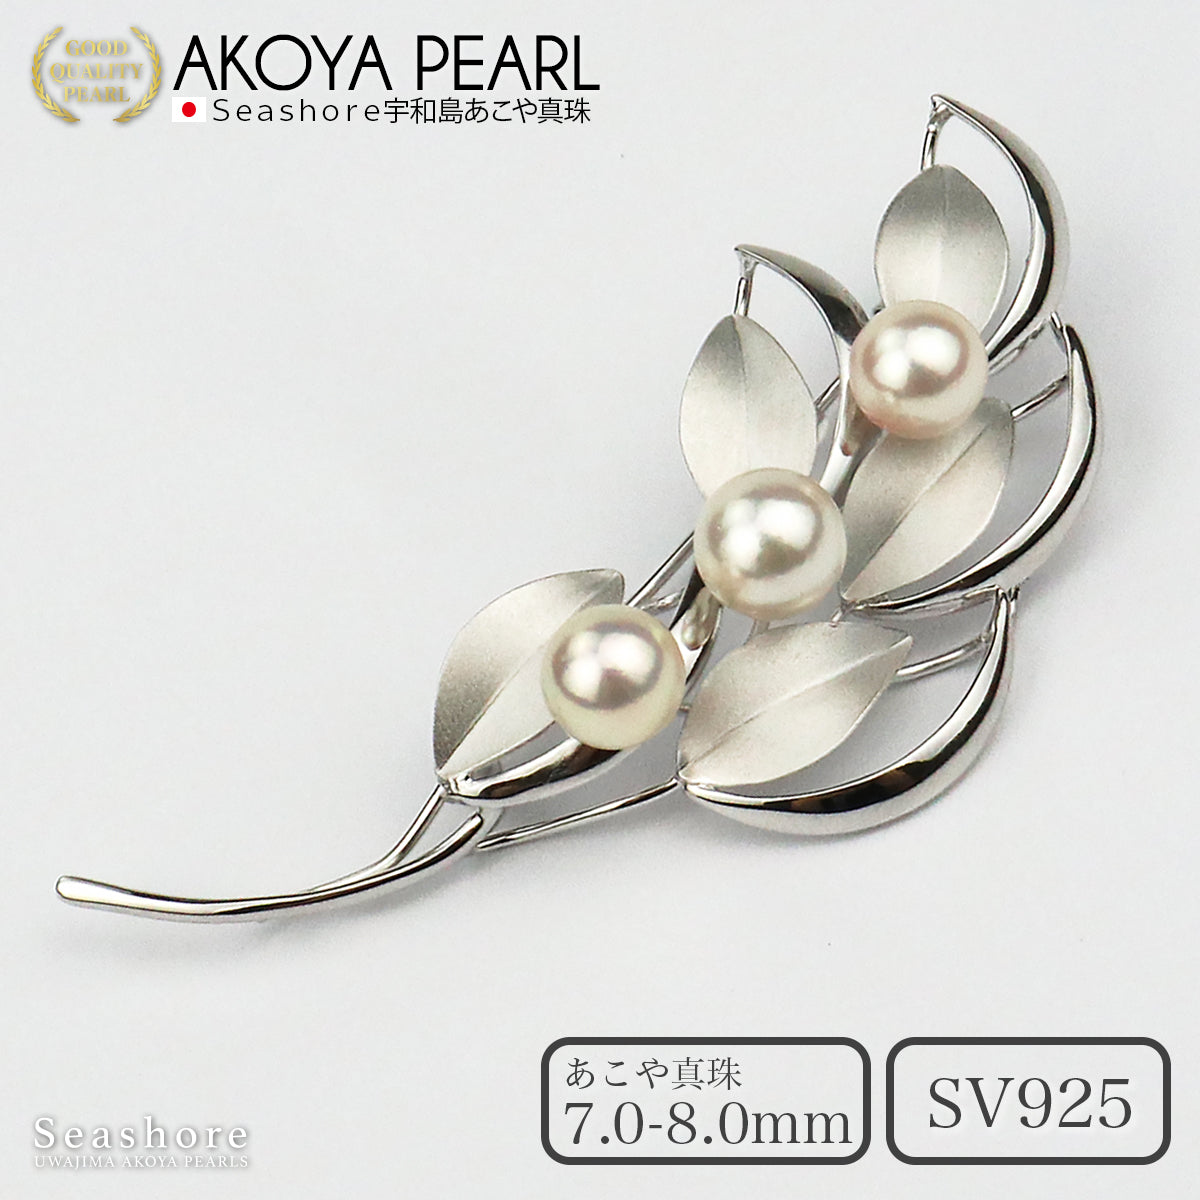 パール ブローチ 葉っぱ SV925 ホワイト 7.0-8.0mm アコヤ真珠 保管用グレーケース付 (3934)